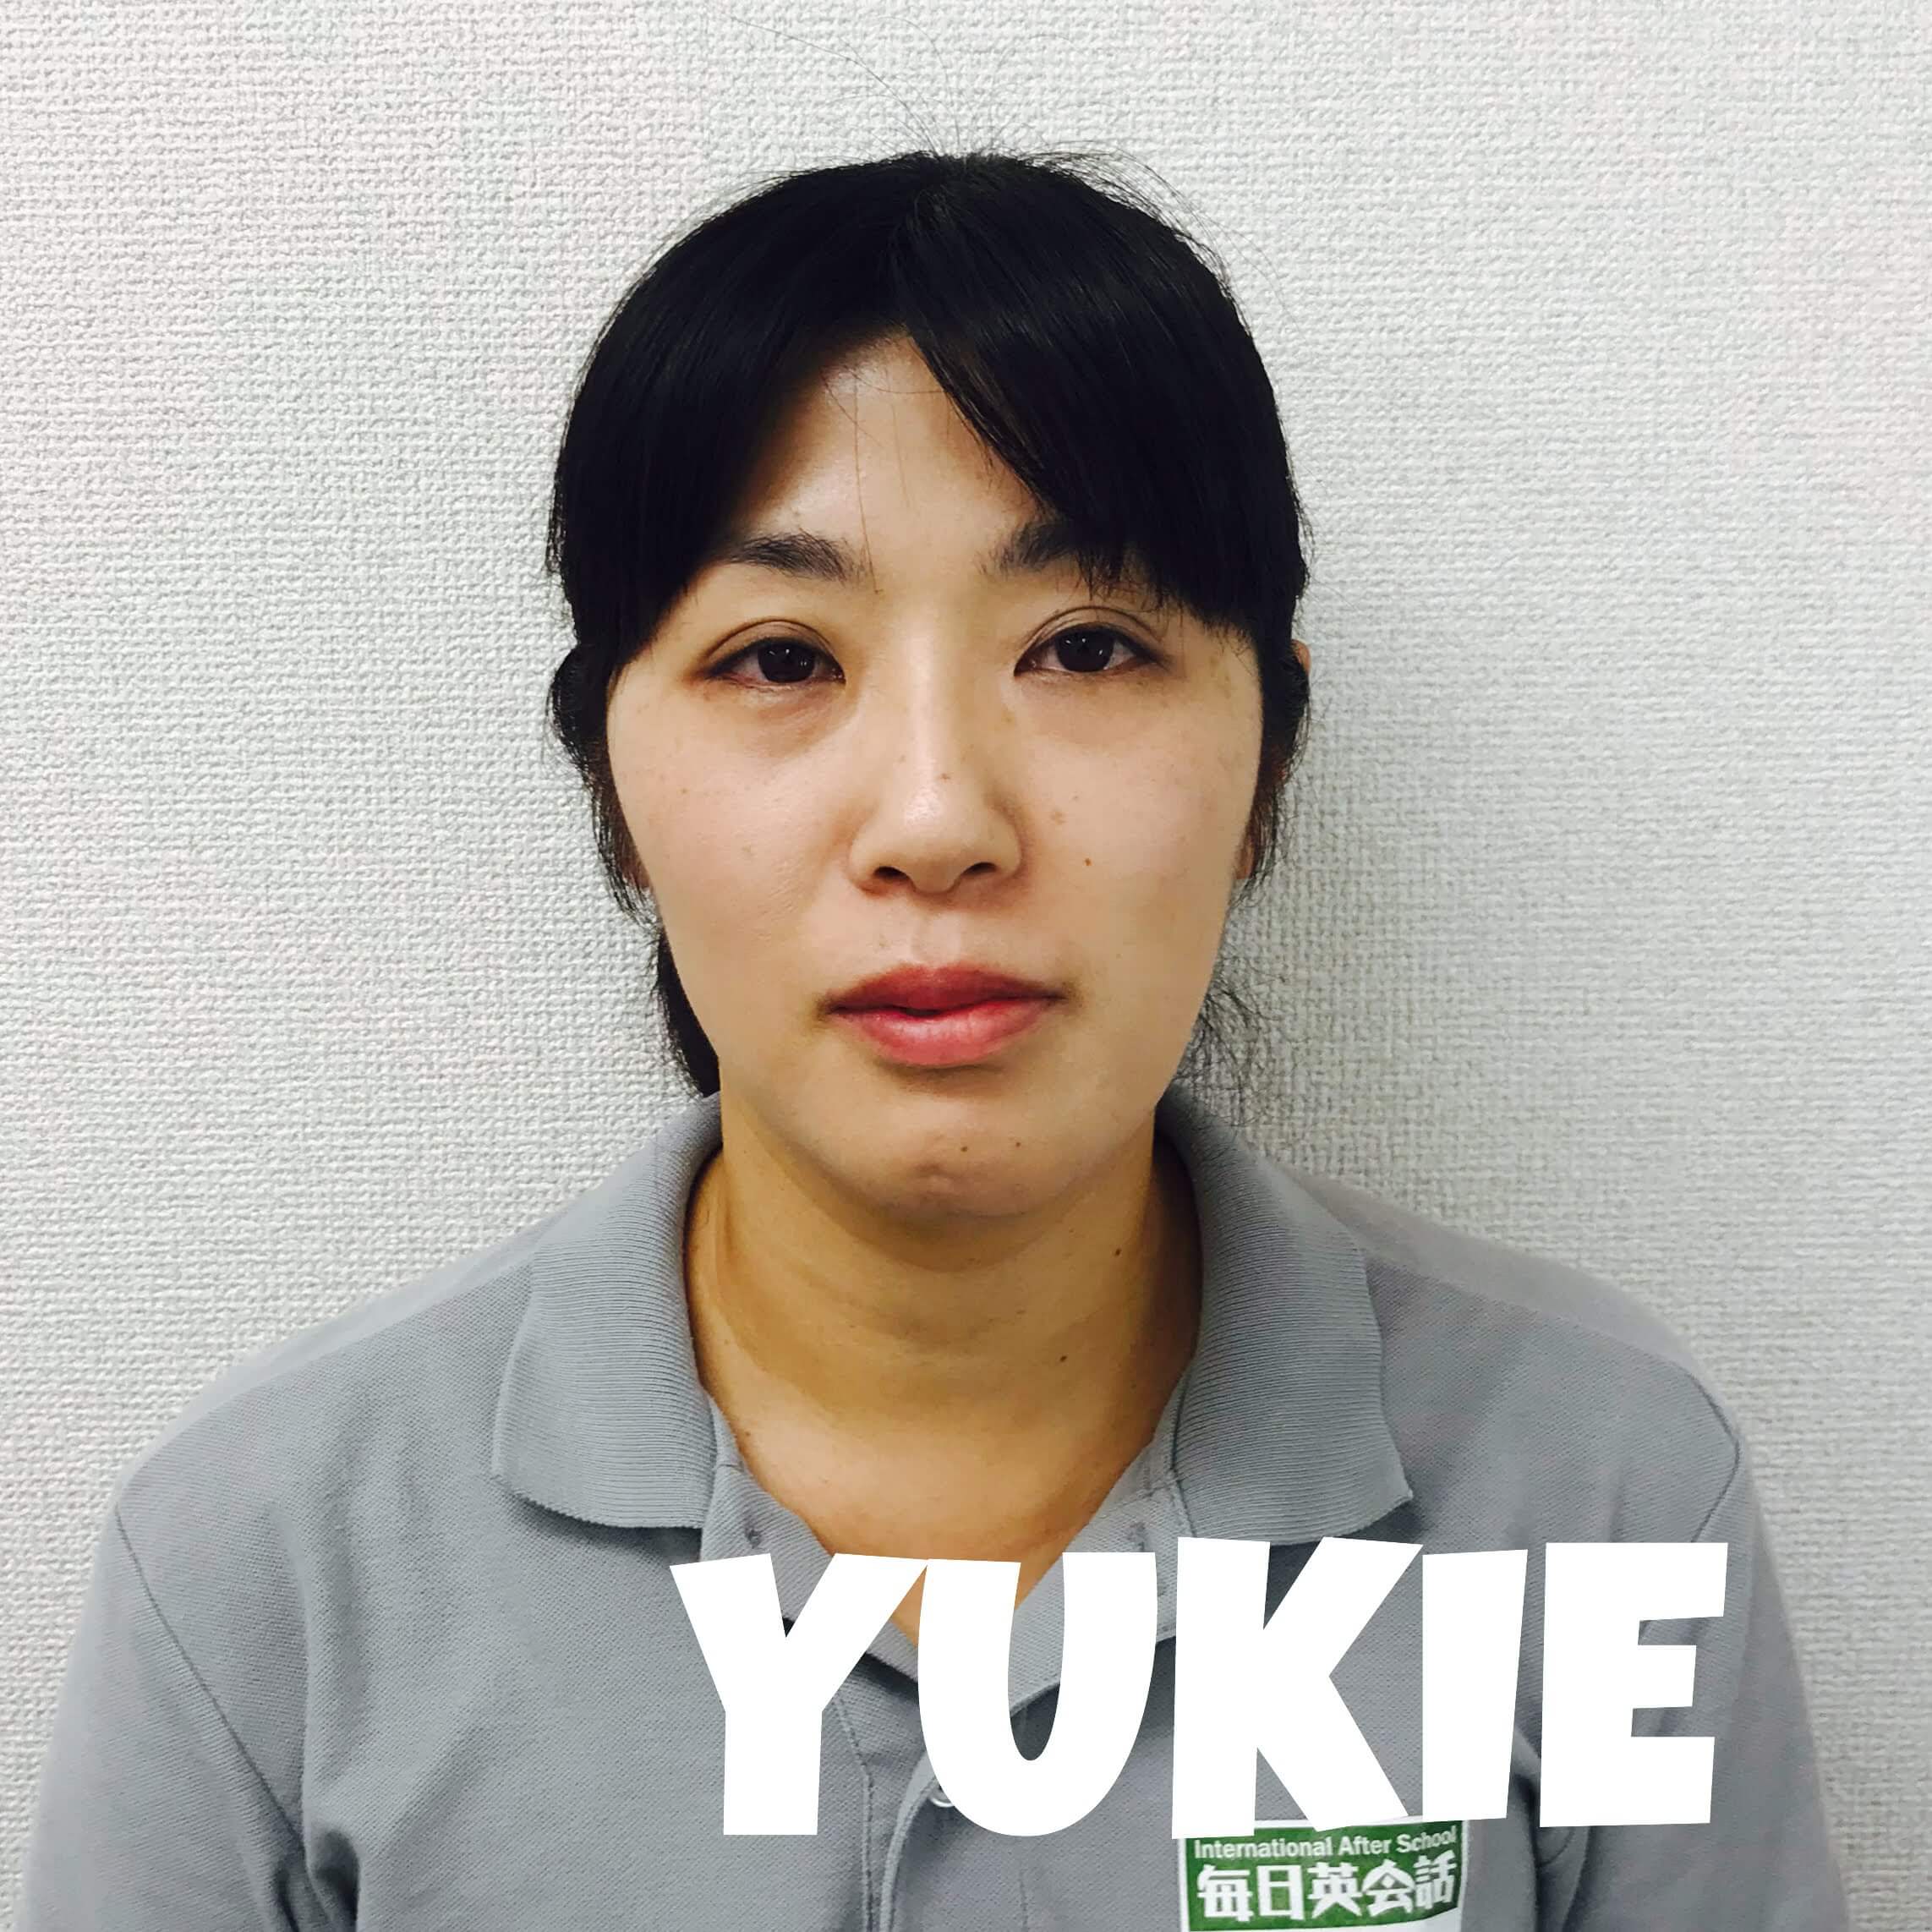 Yukie